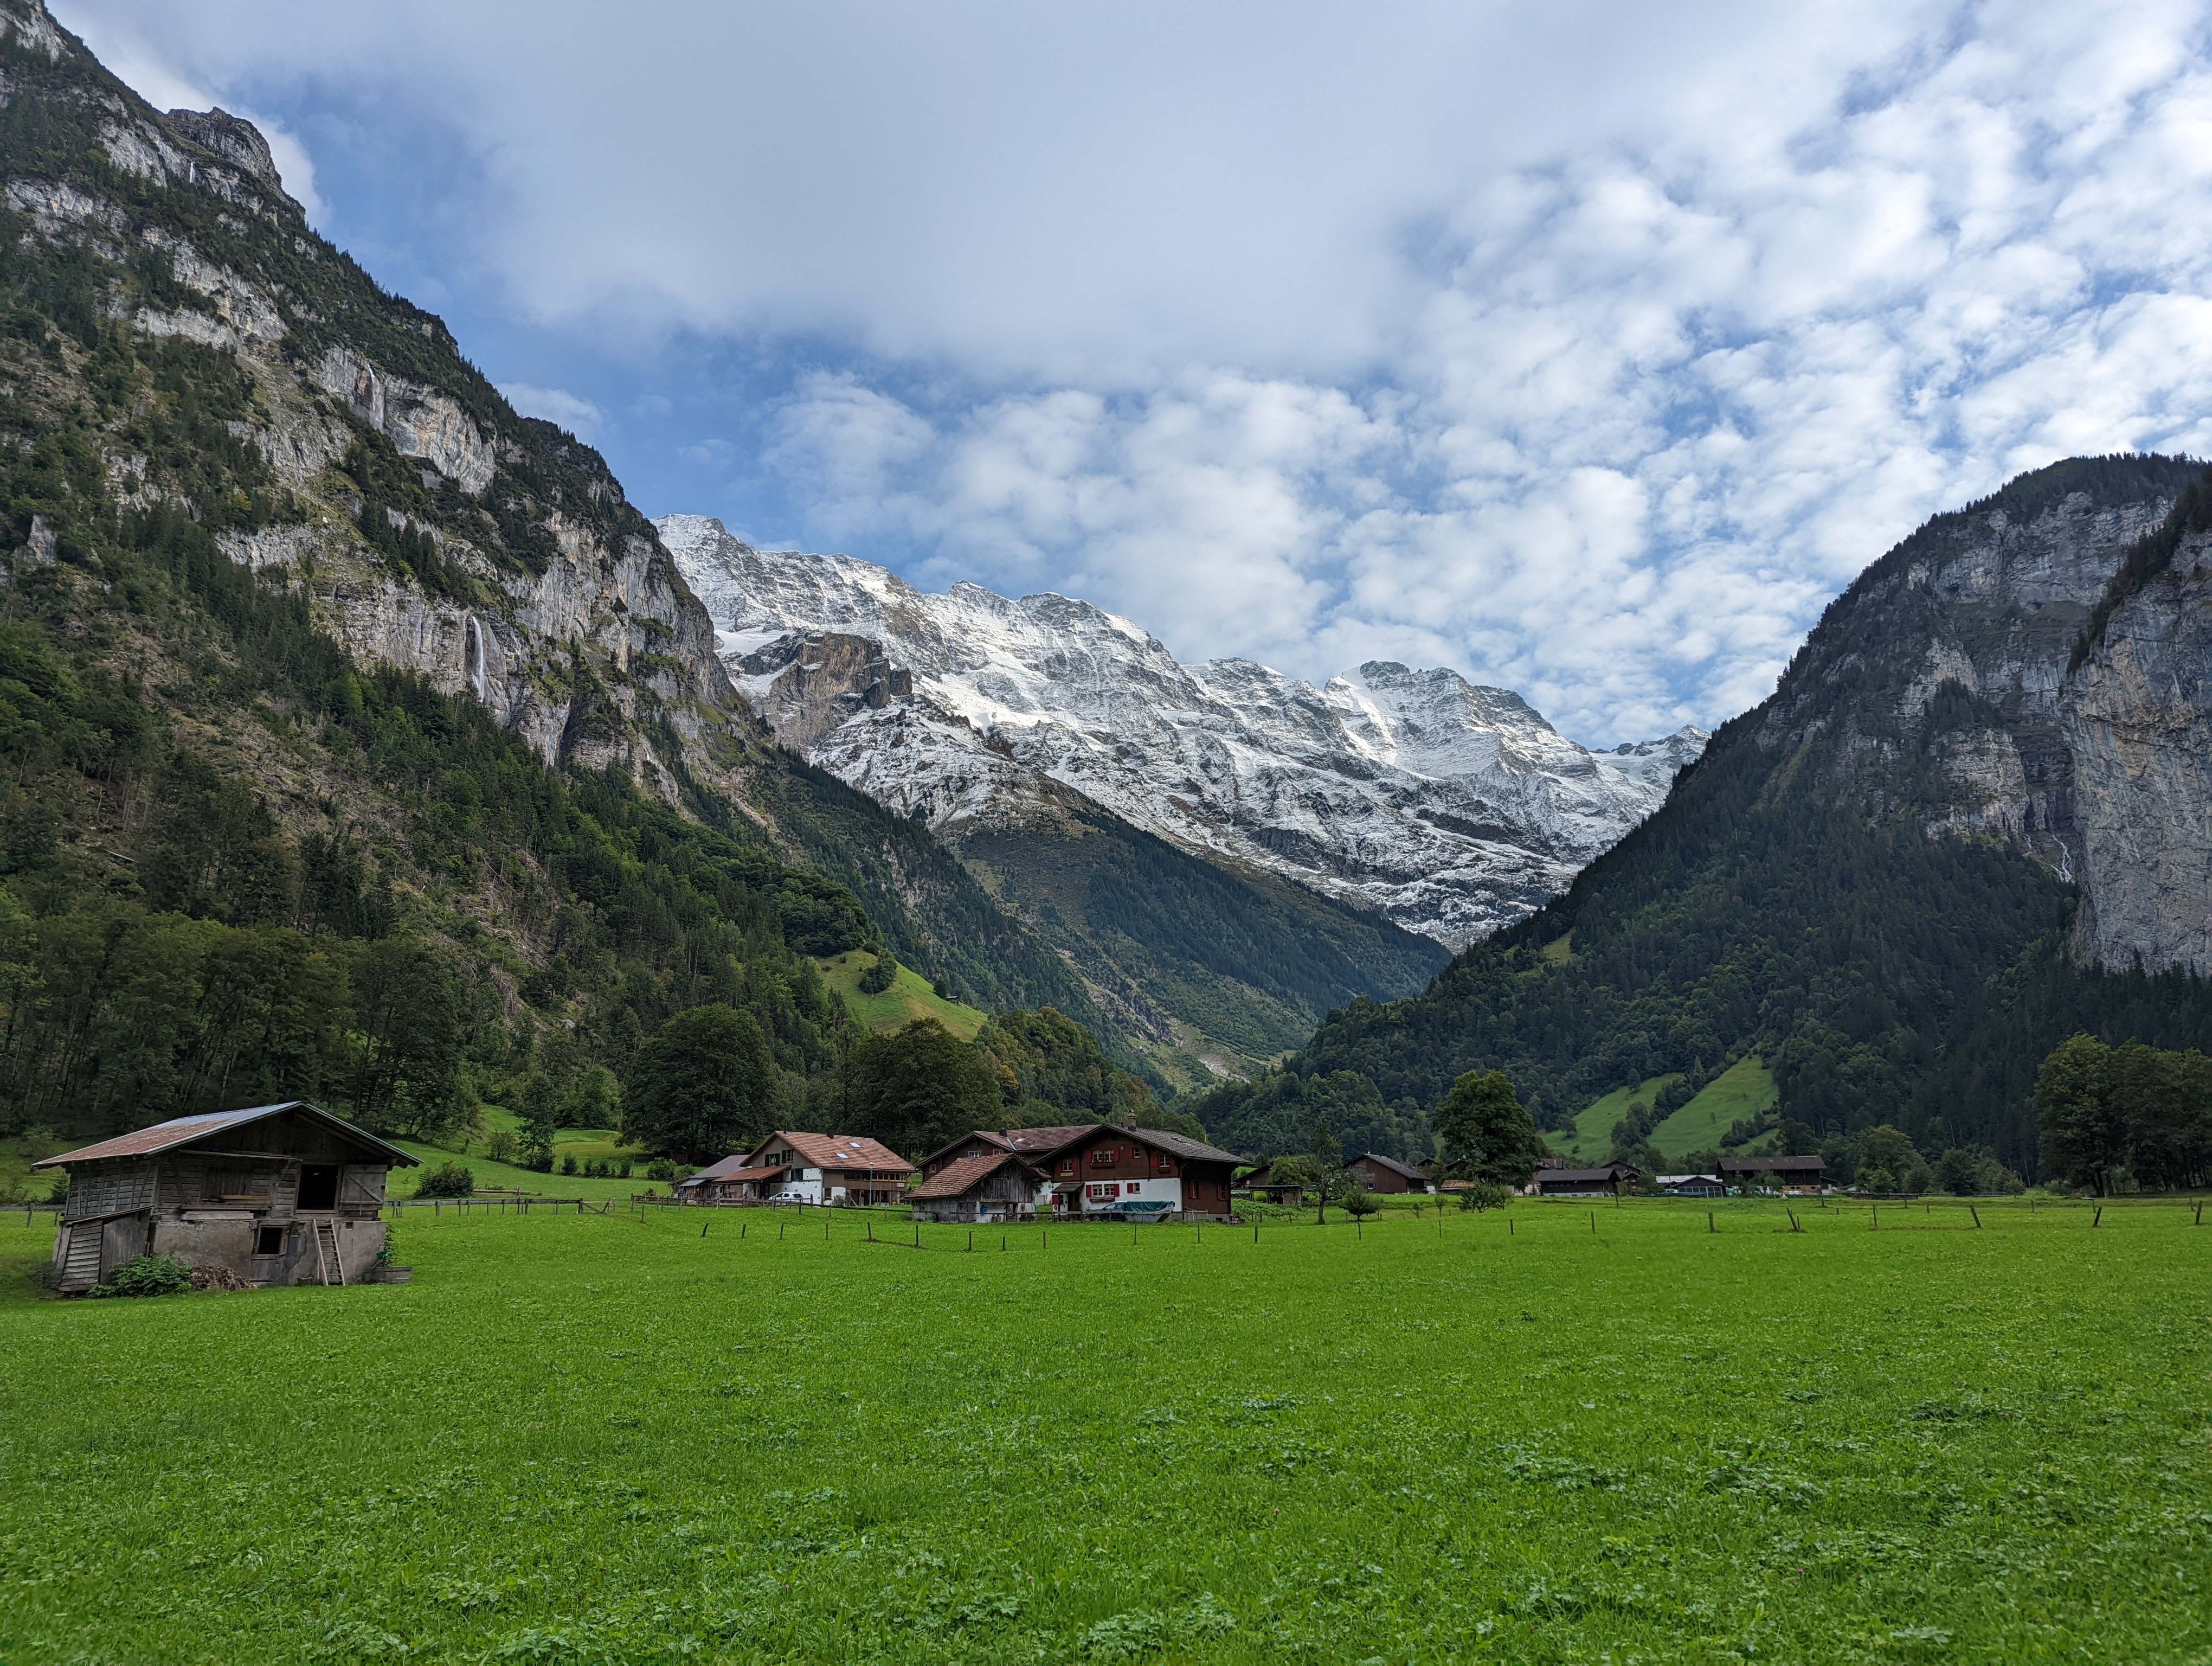 End of Lauterbrunnen valley